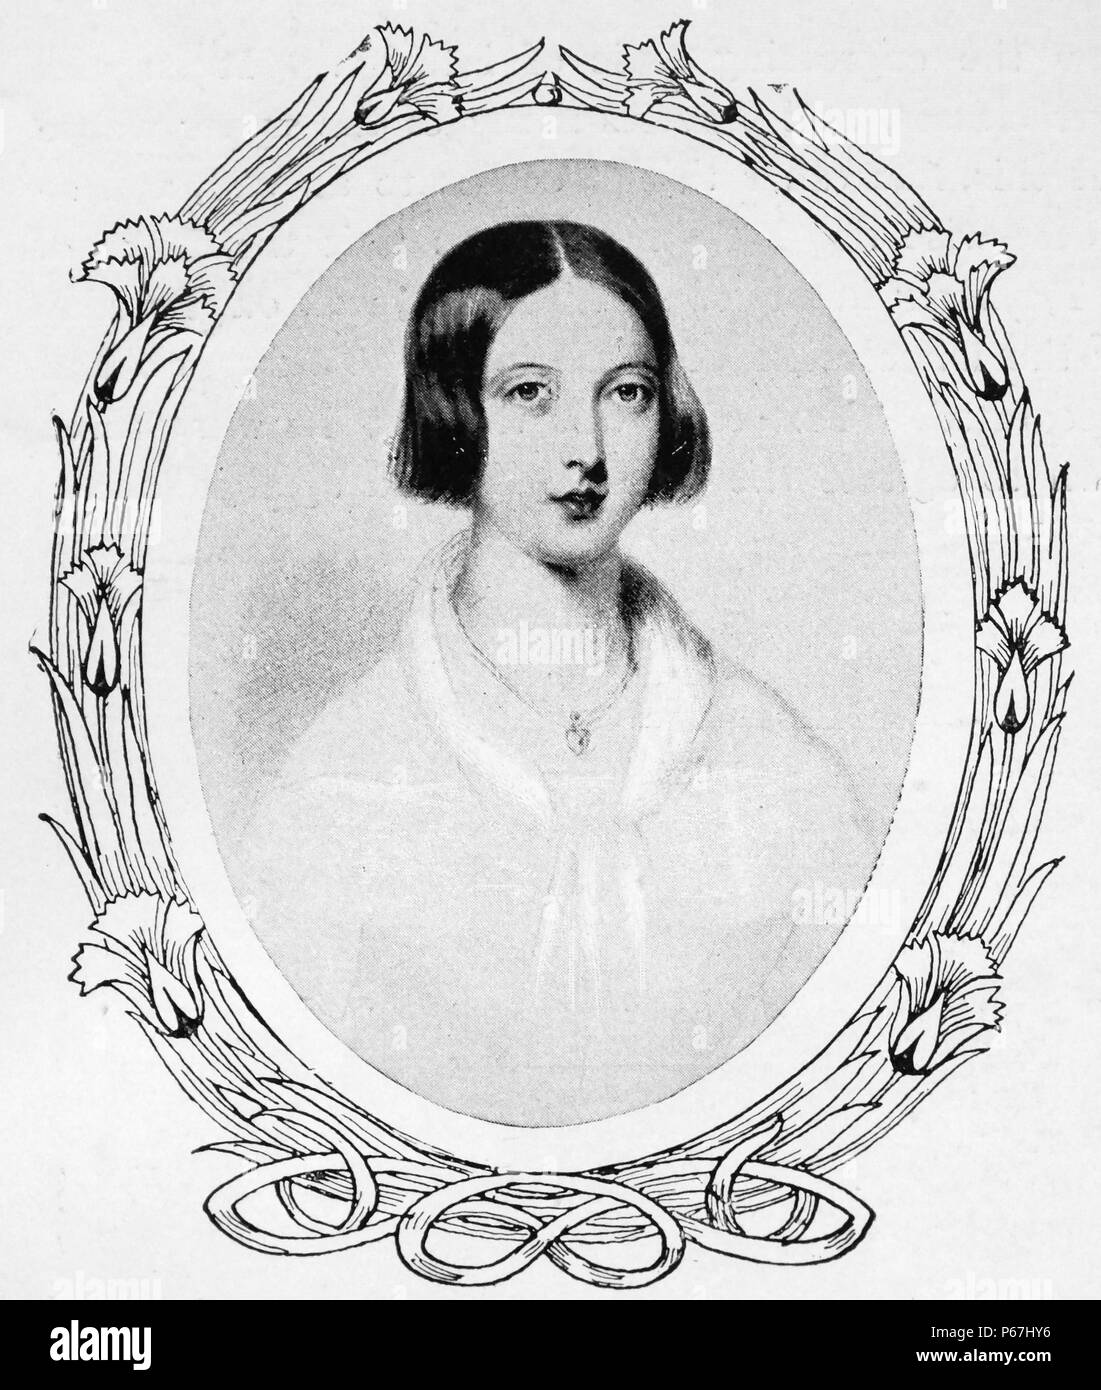 Königin Victoria von Großbritannien 1842. Victoria (Alexandrina Victoria; 24. Mai 1819 - 22. Januar 1901) Der Monarch des Vereinigten Königreichs von Großbritannien und Irland wurde ab dem 20. Juni 1837 bis zu ihrem Tod. Vom 1. Mai 1876, die sie pflegte, die zusätzlichen Titel der Kaiserin von Indien Stockfoto